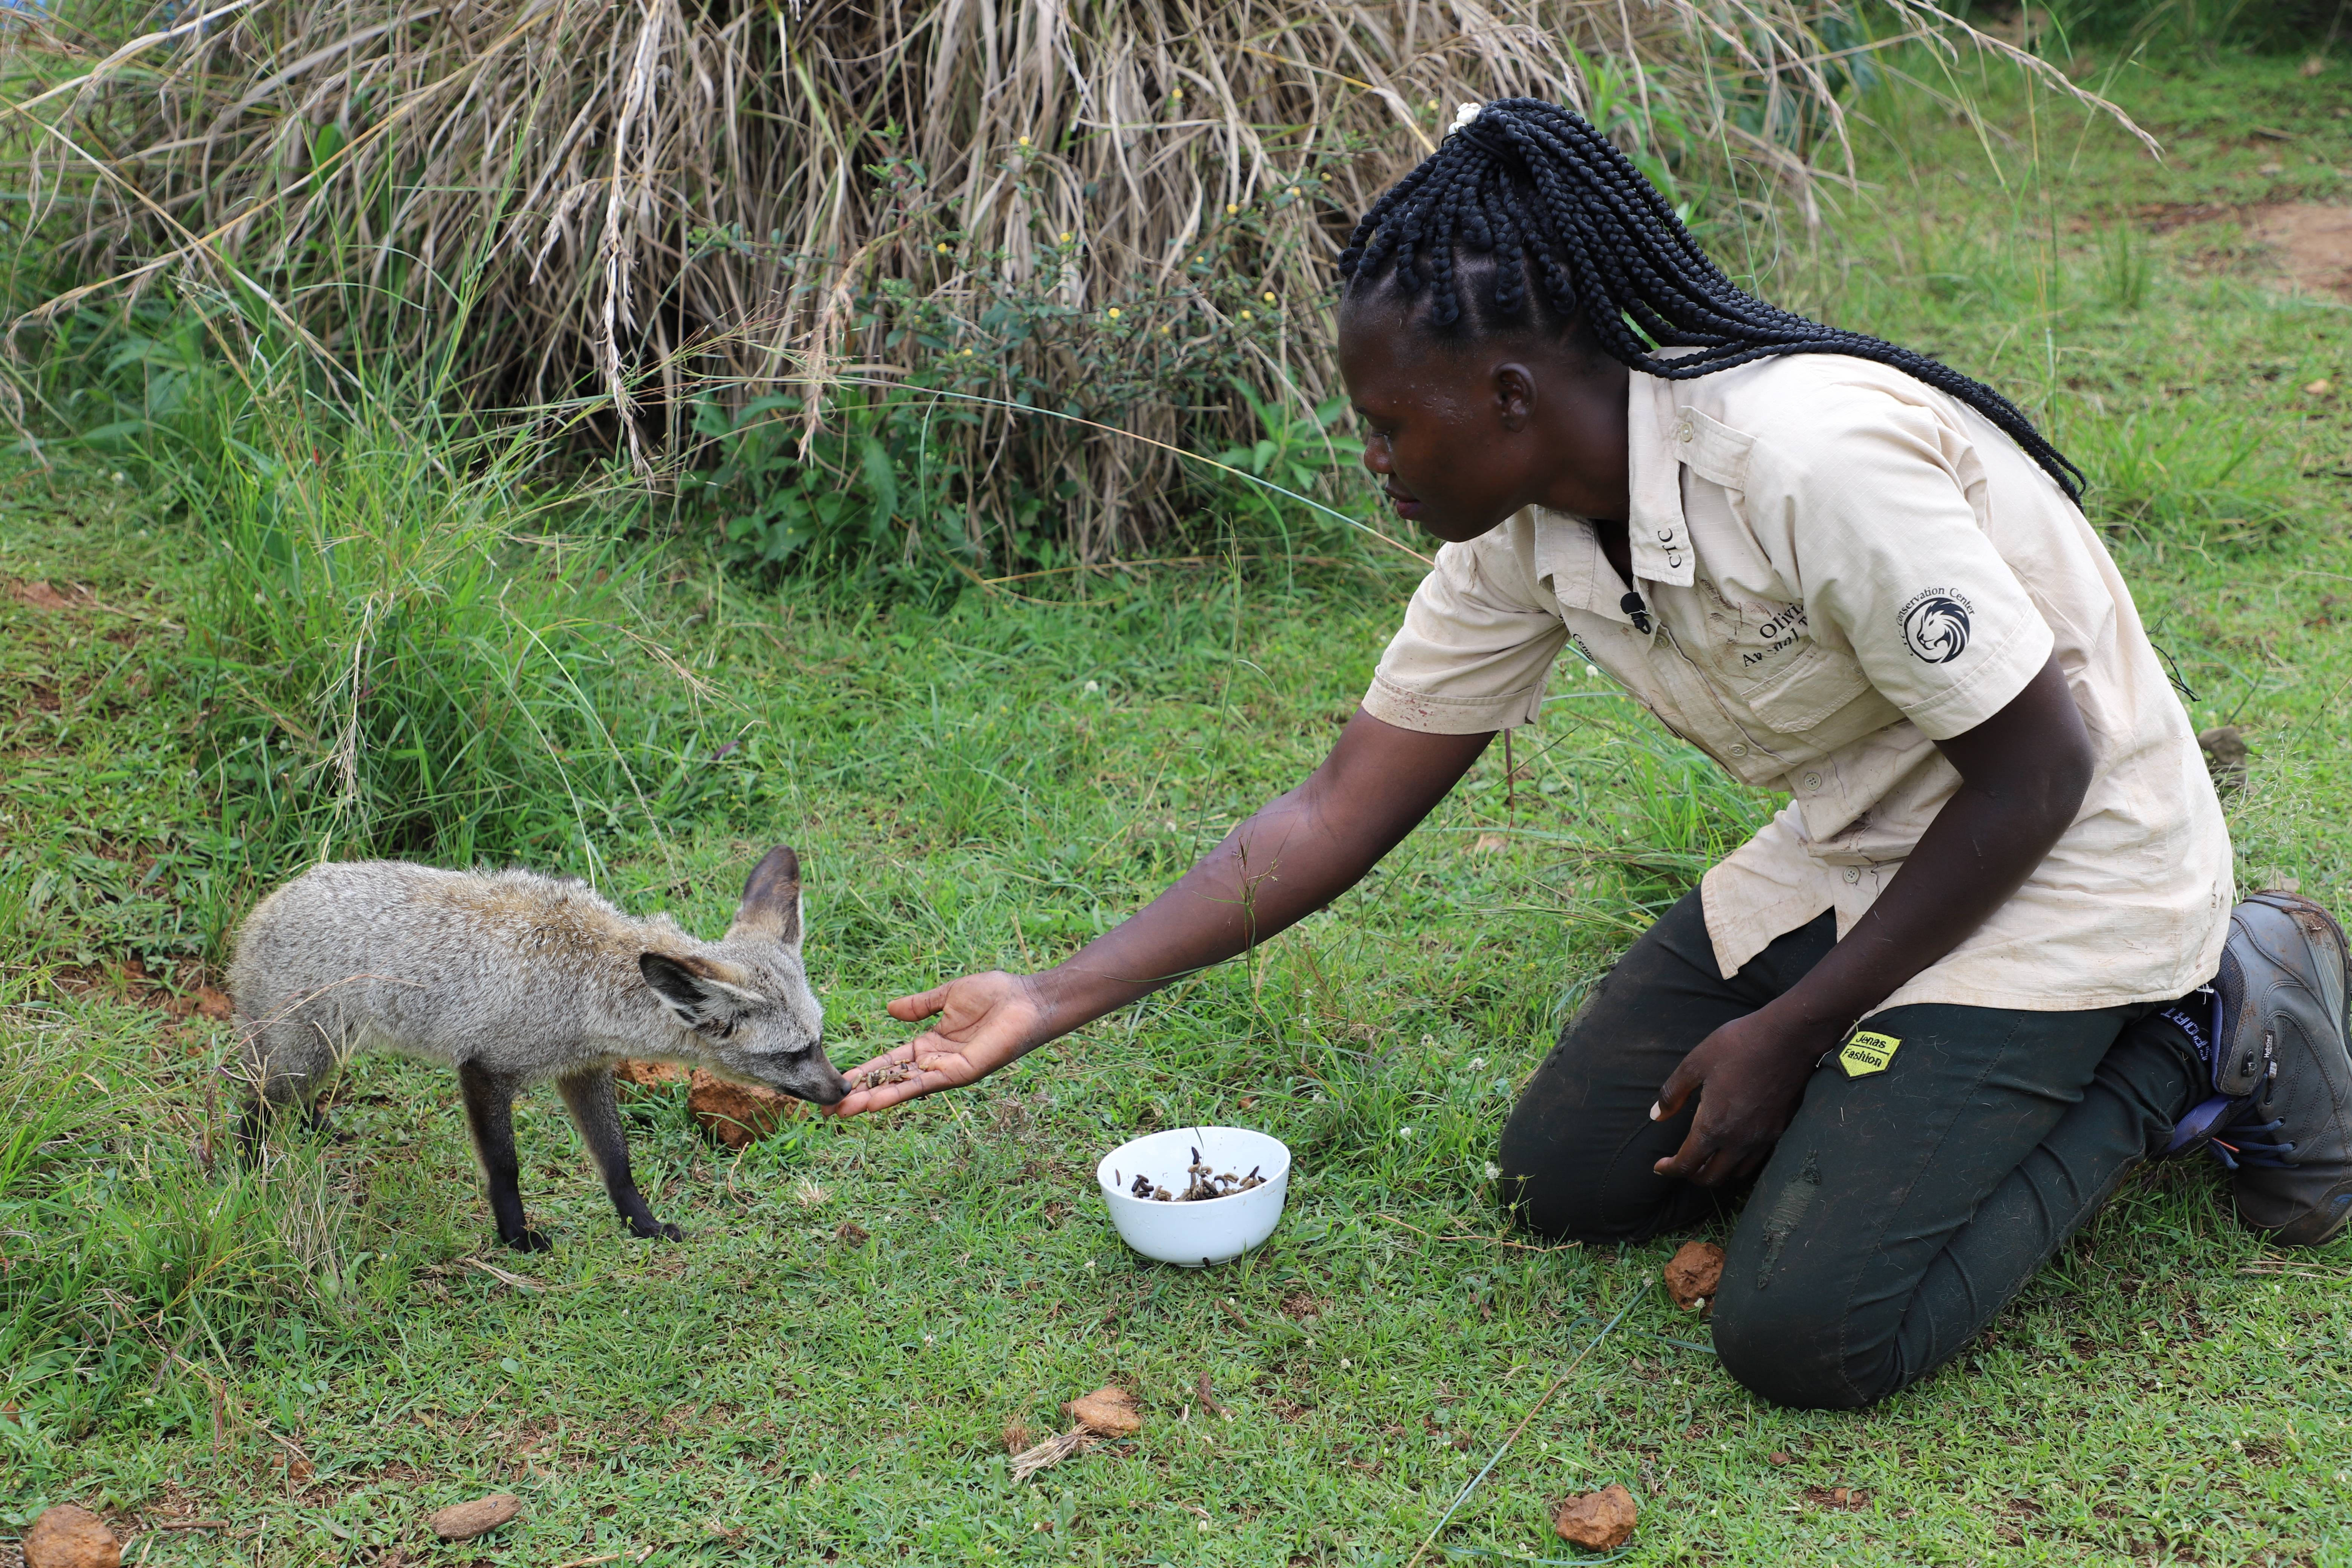 乌干达青年倡导人类与野生动物和谐相处